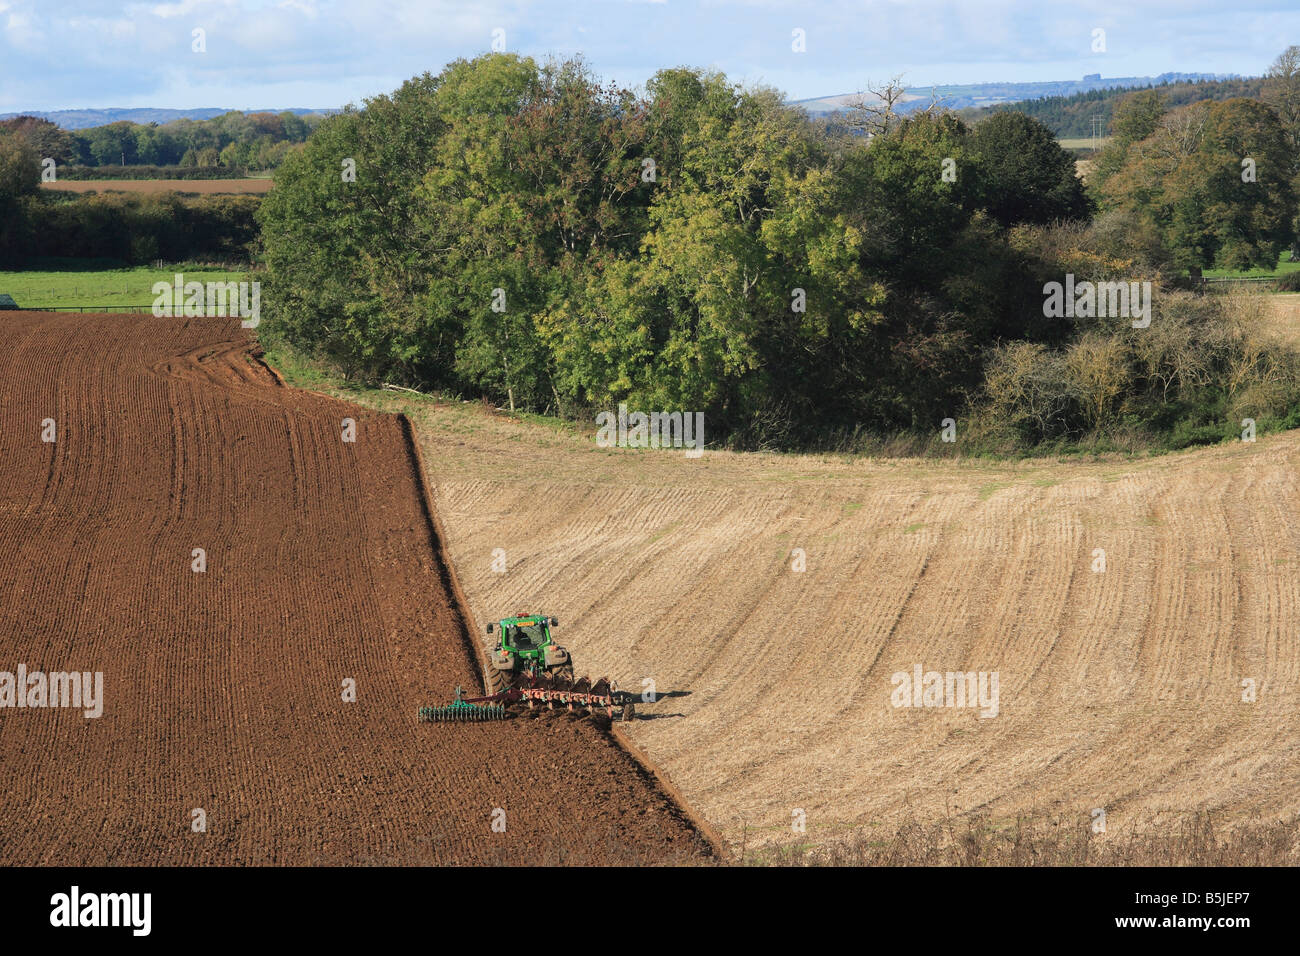 Agriculteur dans le tracteur laboure un champ Banque D'Images